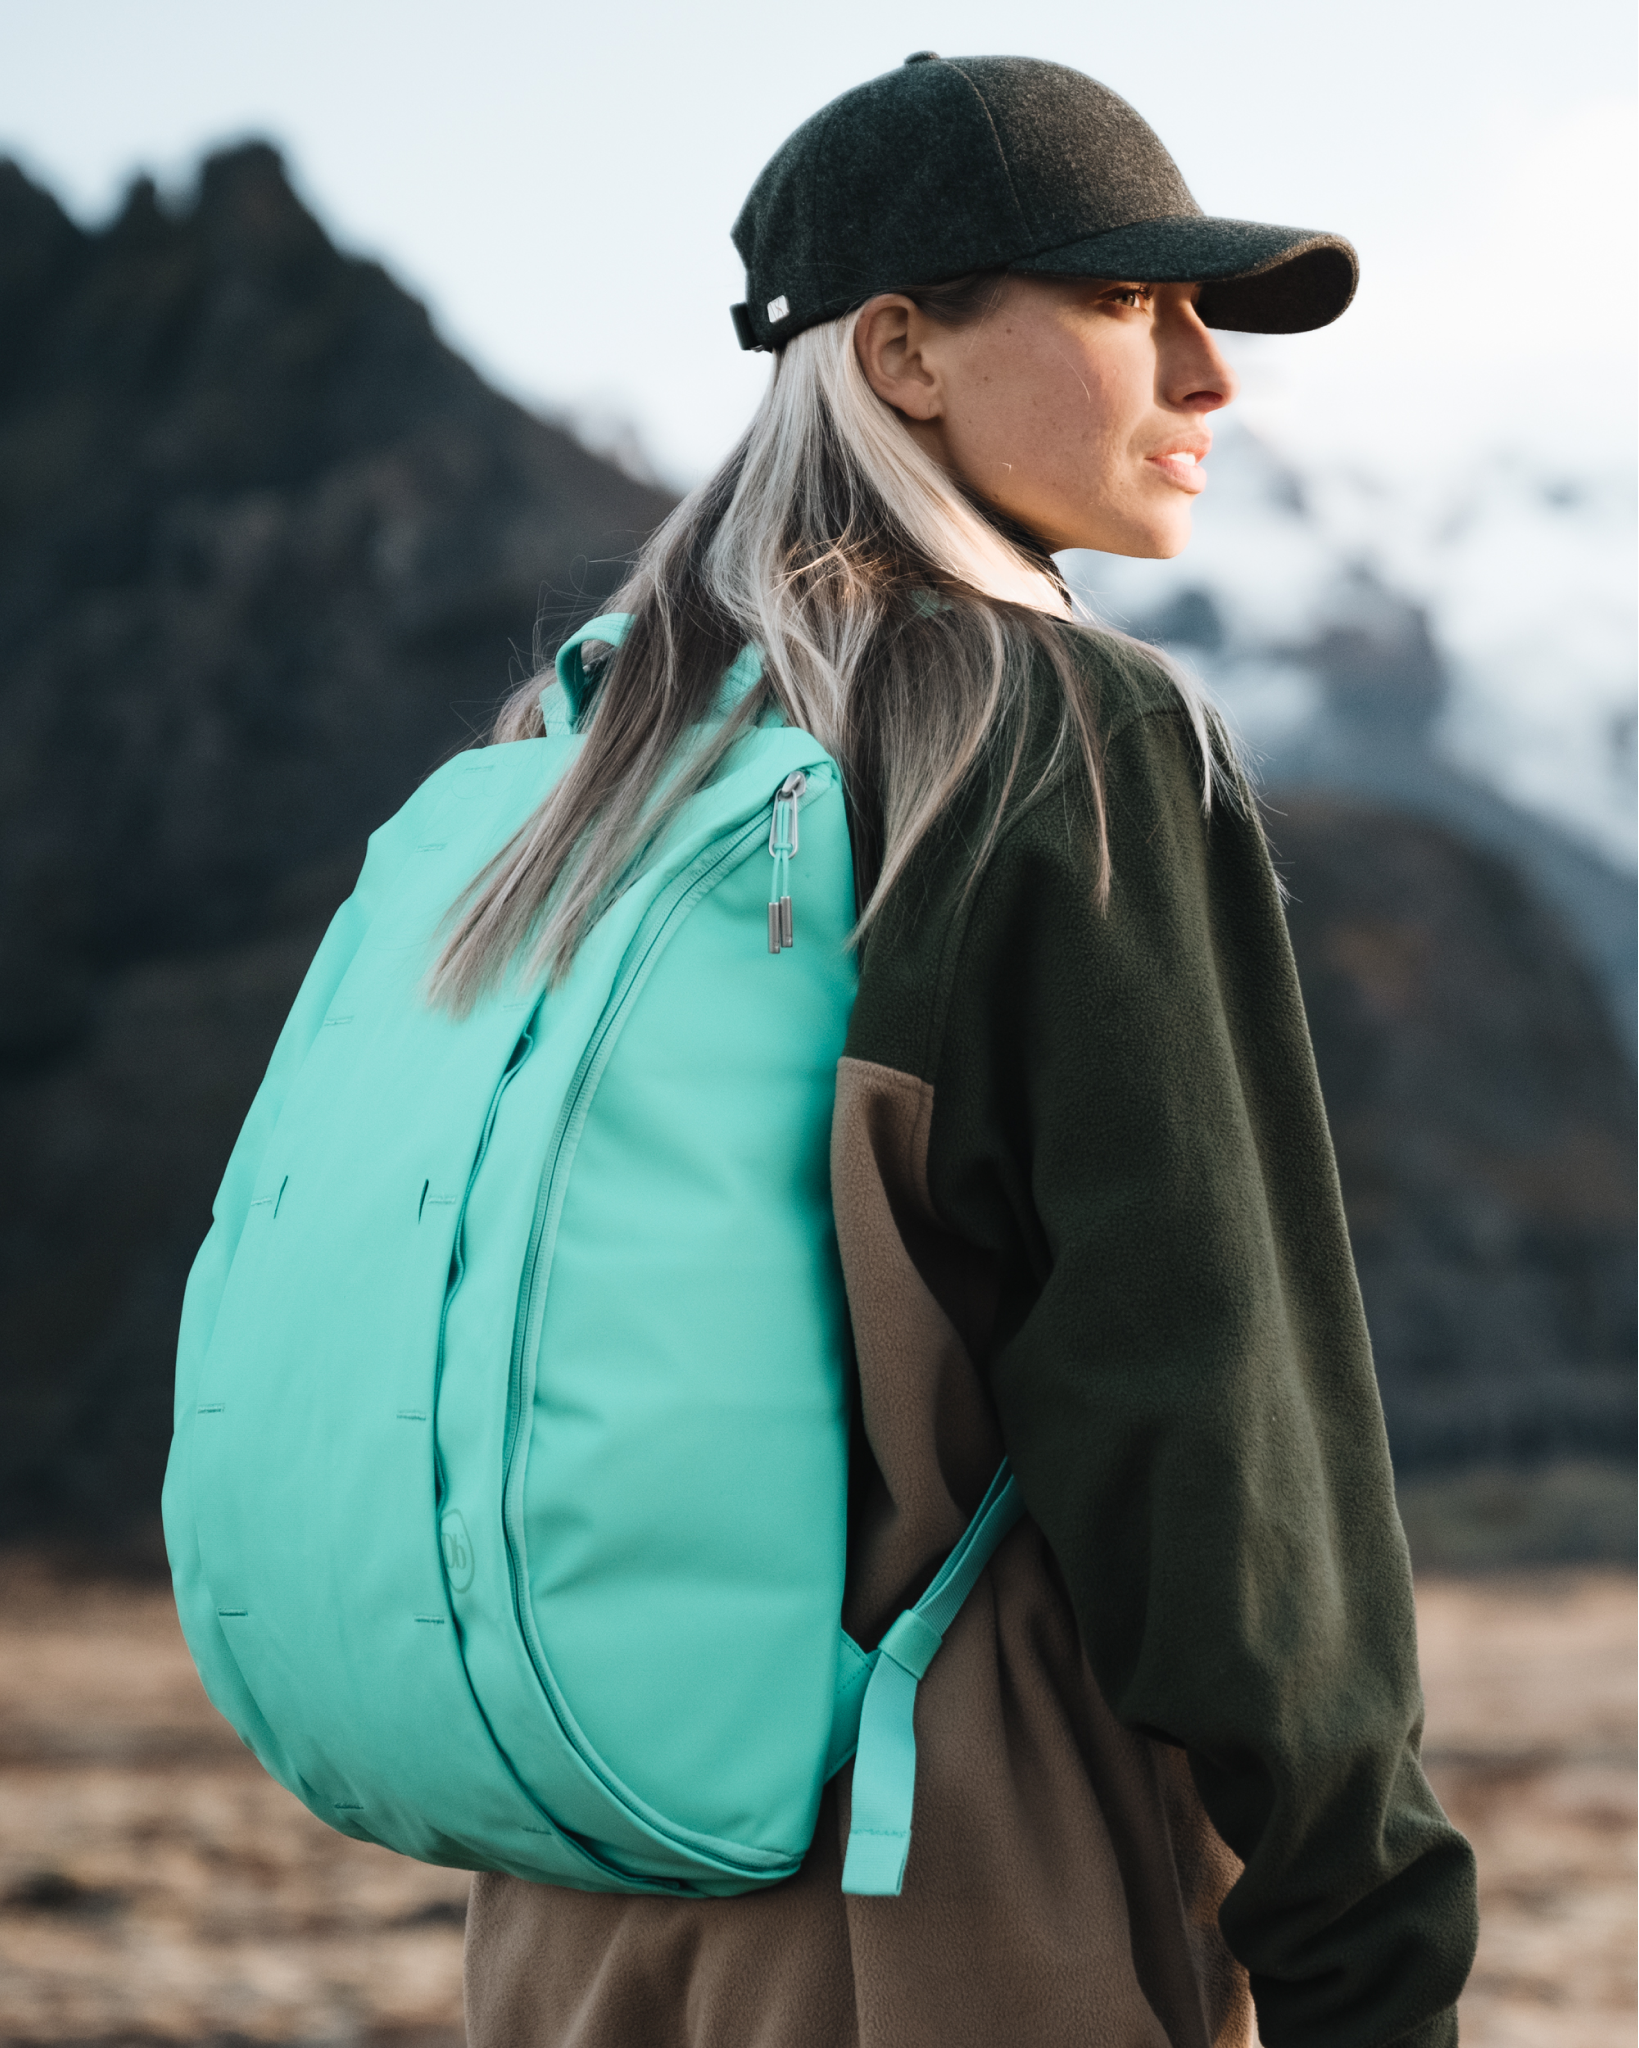 Hugger Base Backpack 15L Glacier Green